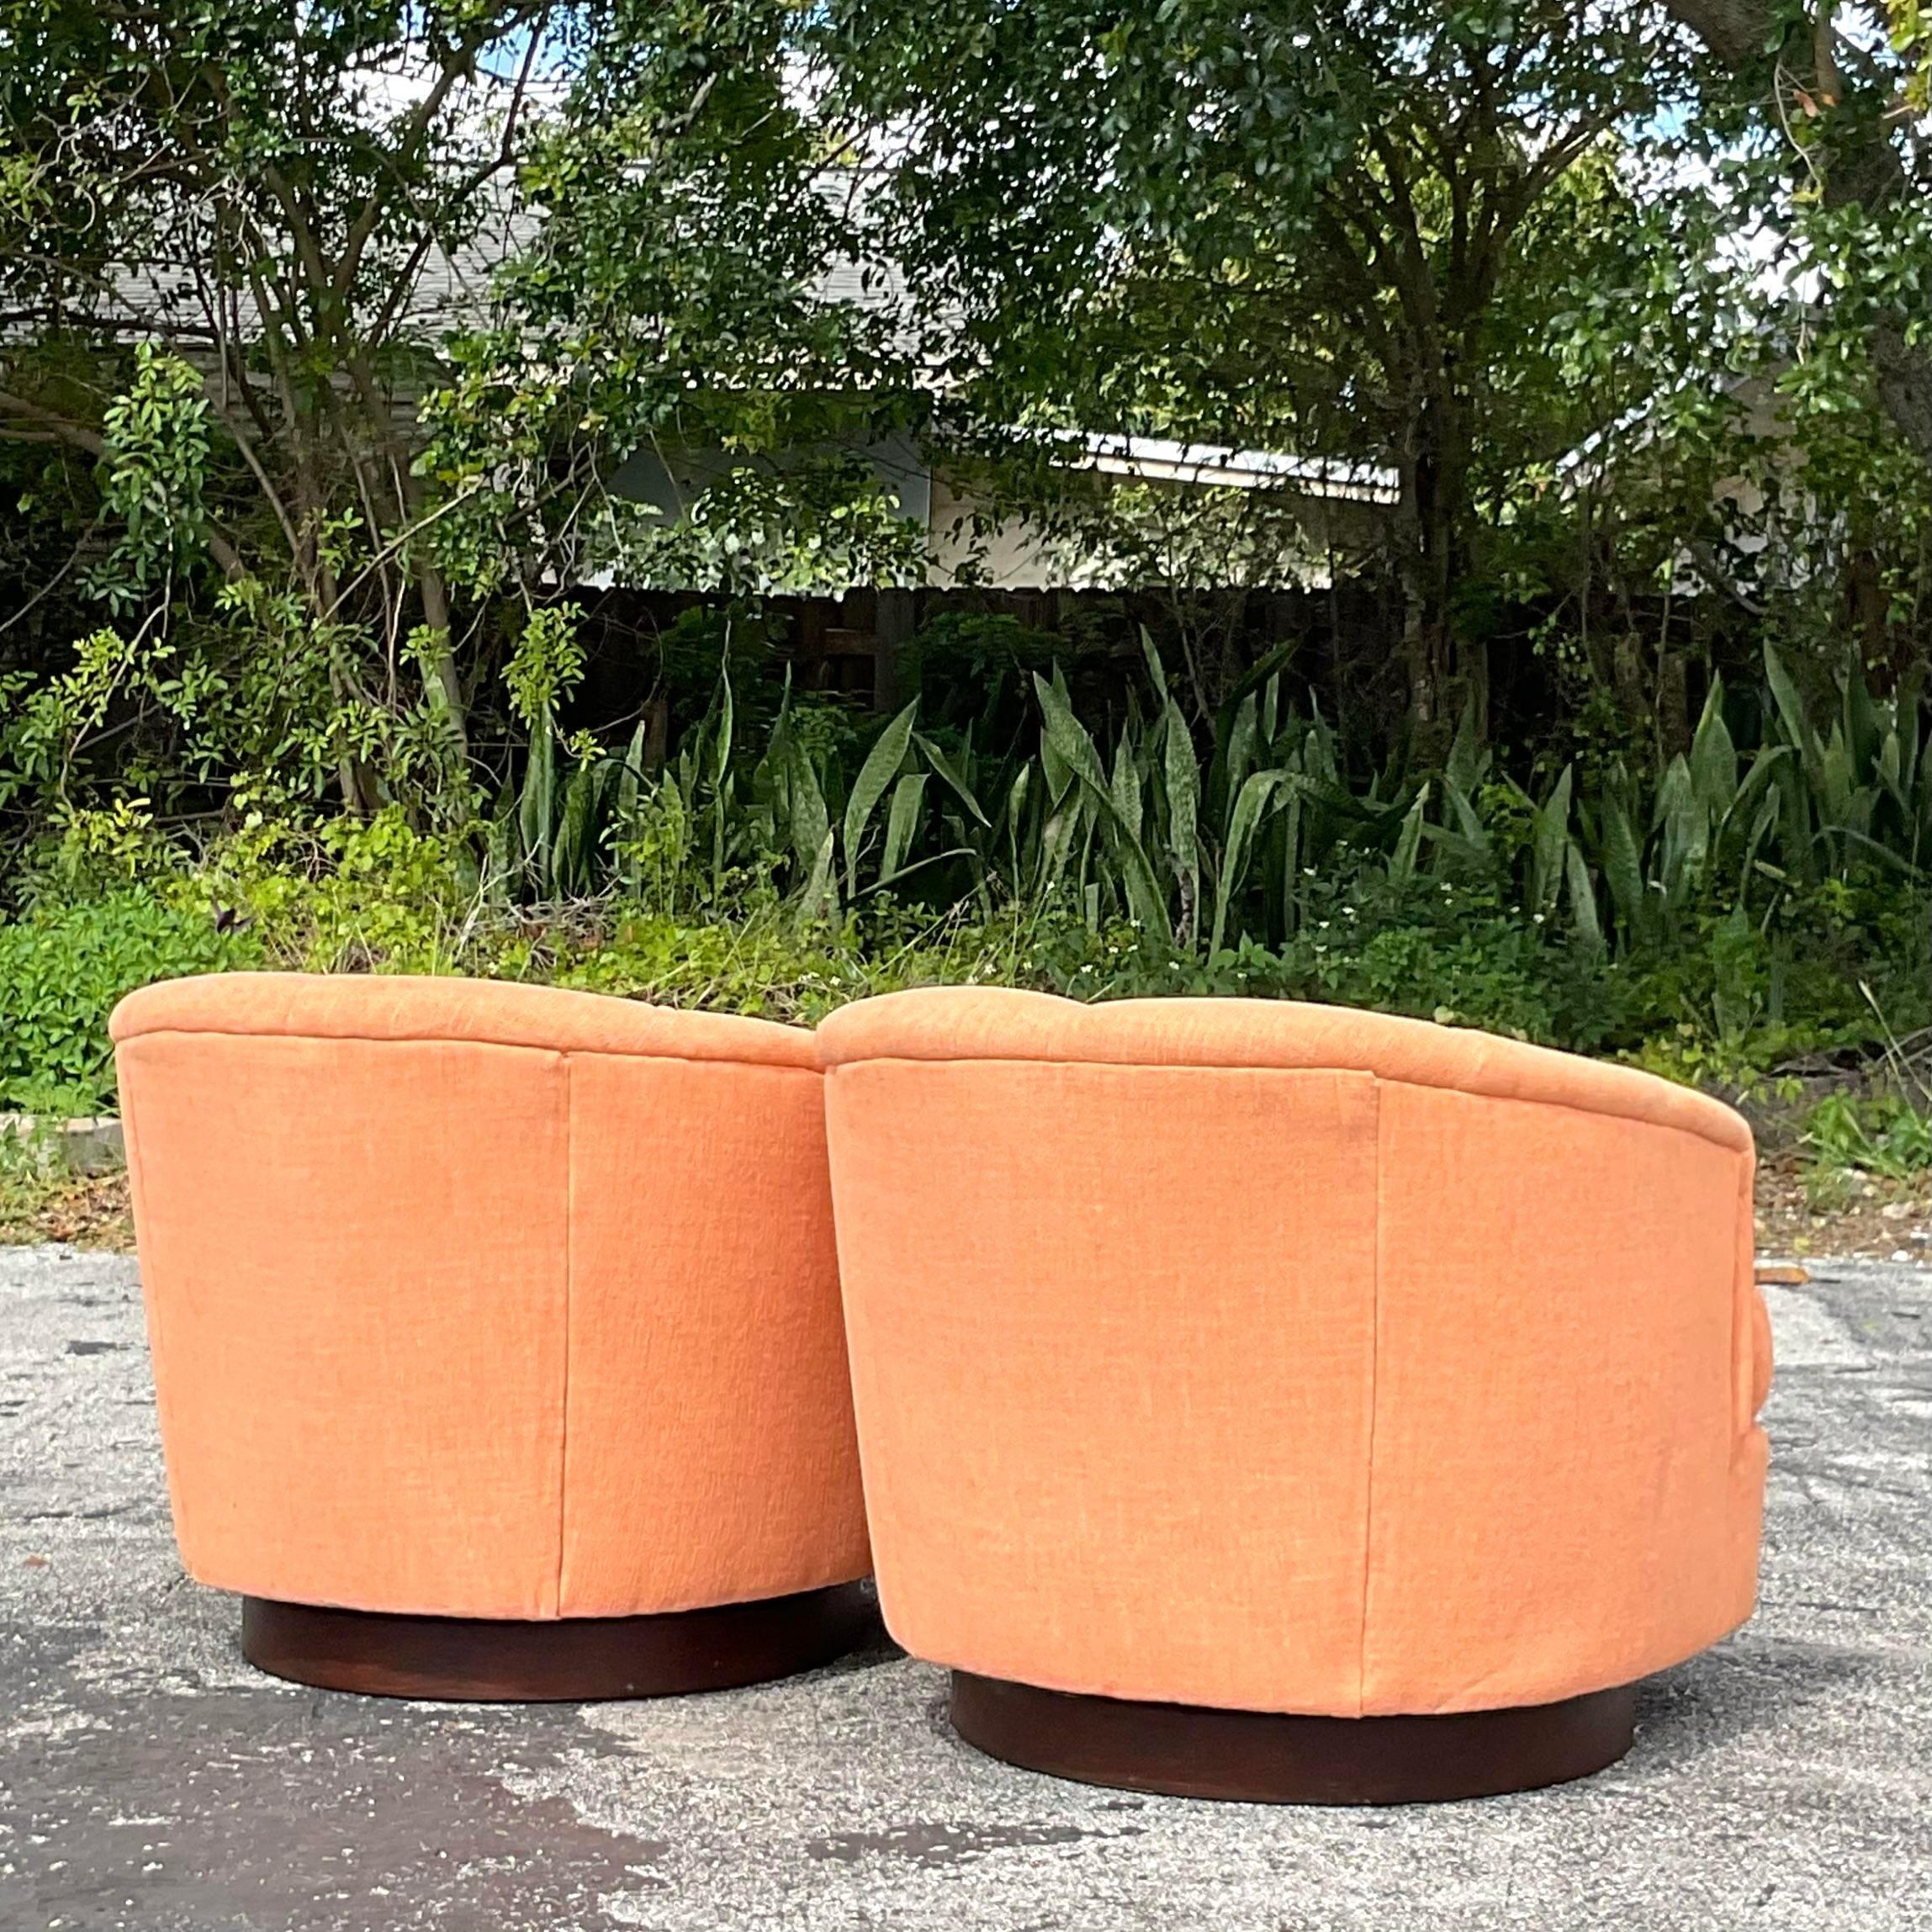 Icône Boho Flair : Vintage Tufted Swivel Chairs Inspired by Milo Baughman - A Pair. Infusez votre espace avec l'ingéniosité américaine et le charme bohème, avec un design intemporel et une fonctionnalité confortable pour un arrangement de sièges de